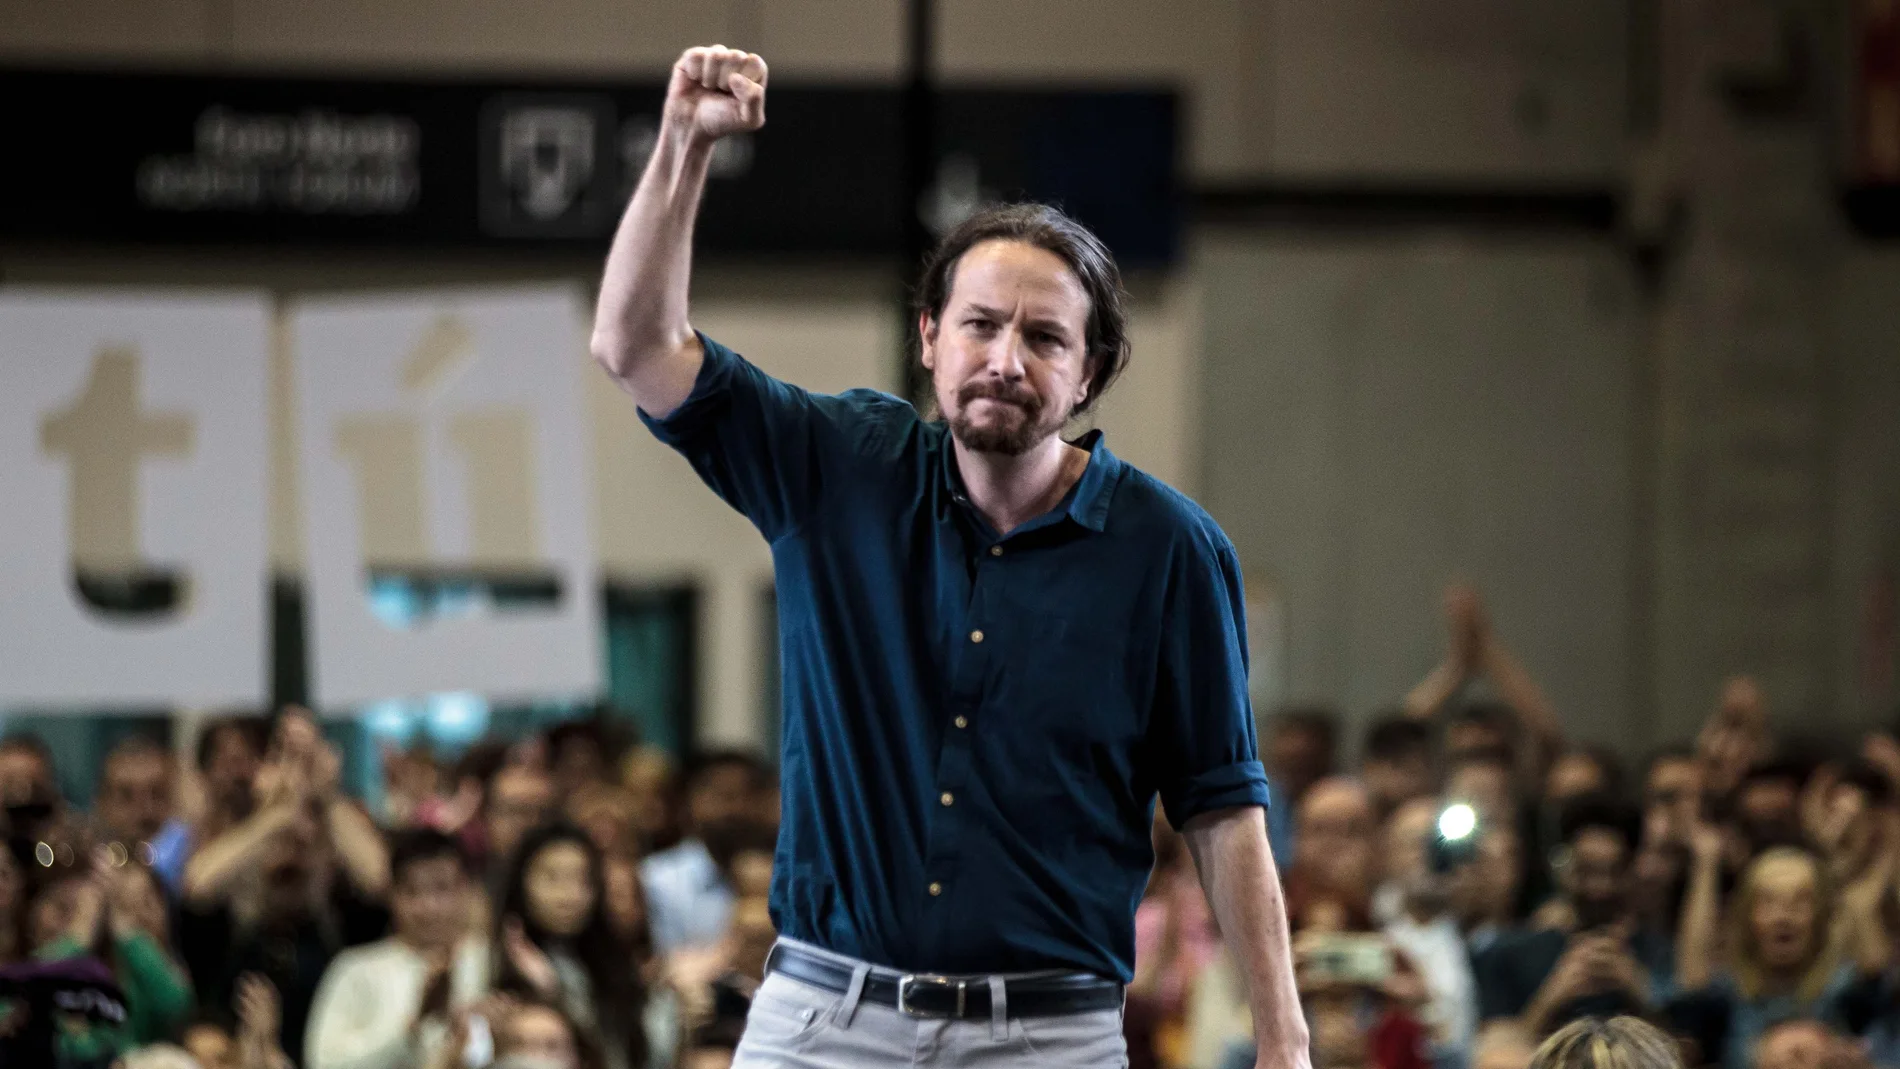 El candidato de Unidas Podemos, Pablo Iglesias.